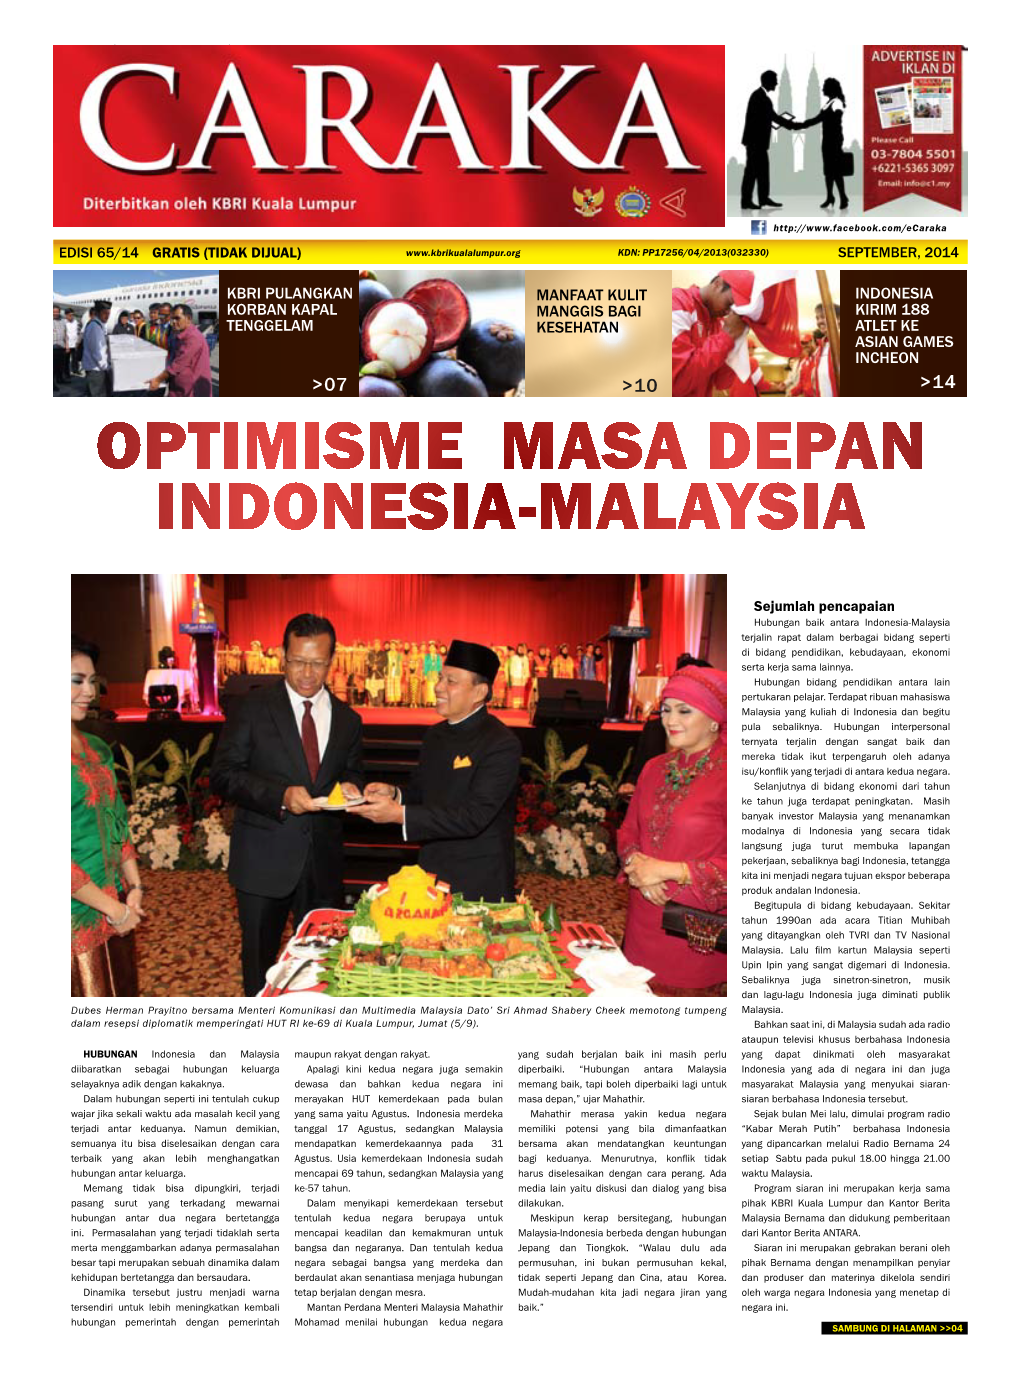 Optimisme Masa Depan Indonesia-Malaysia